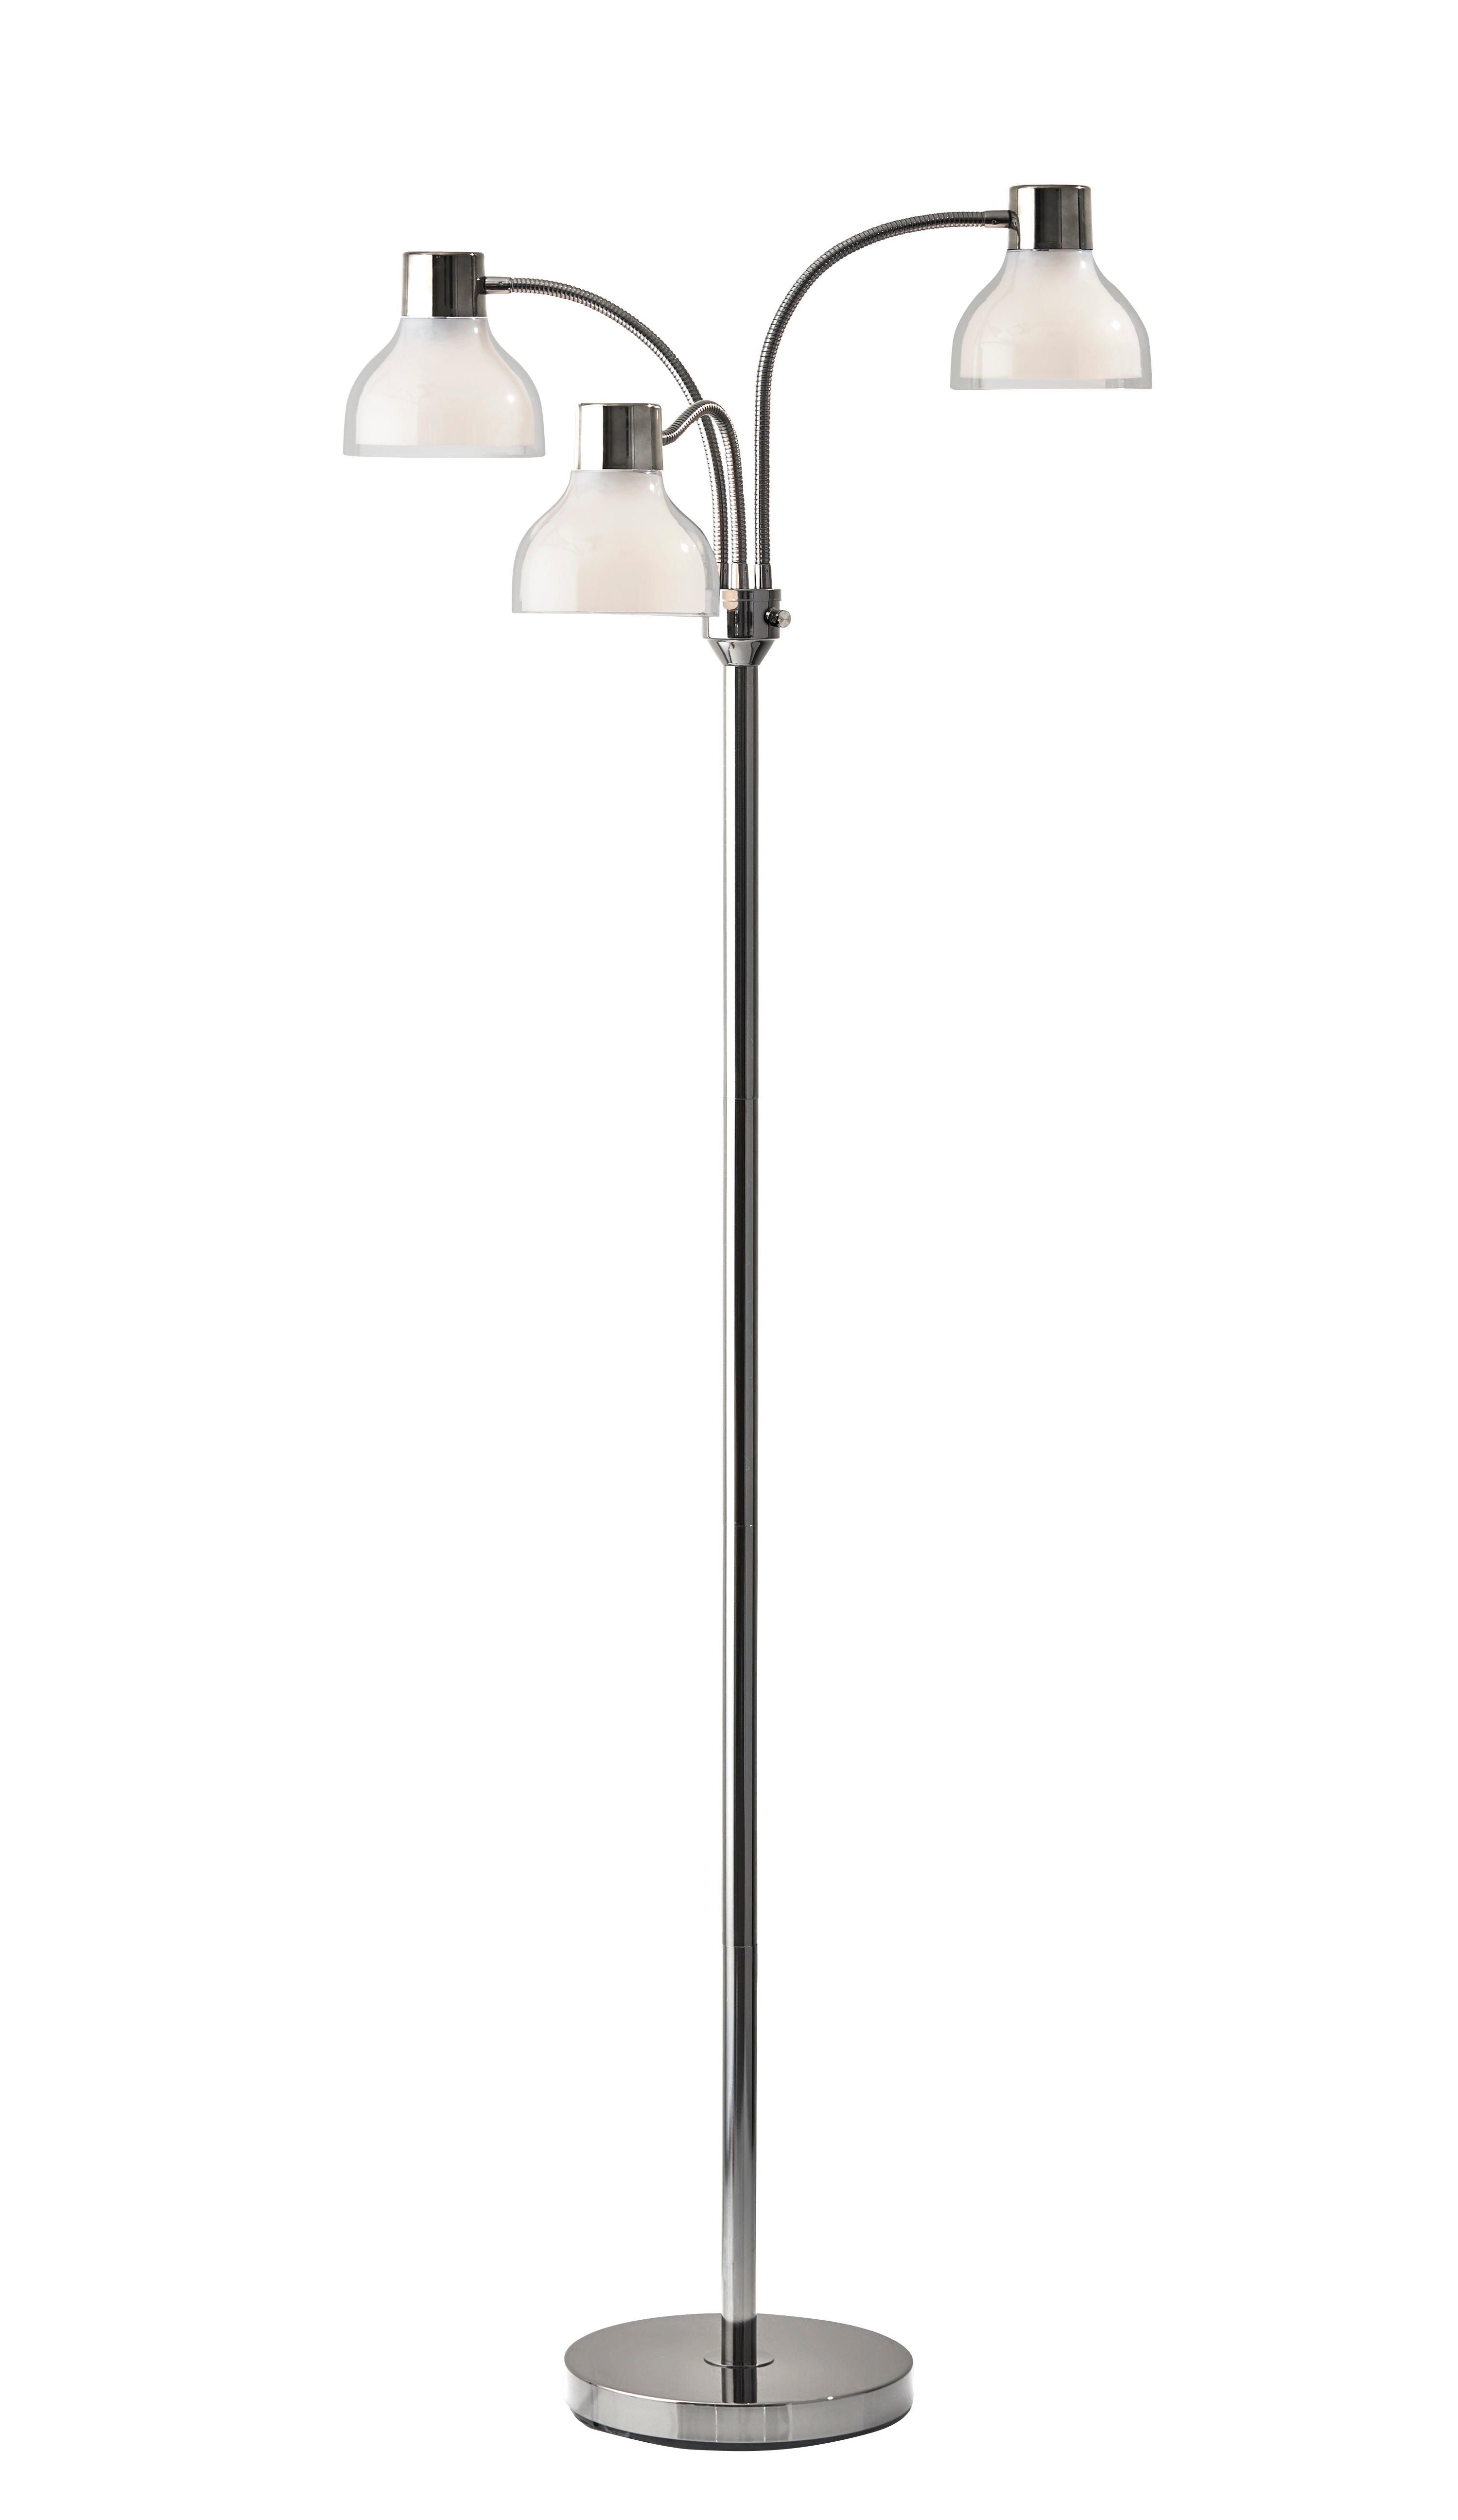 VIVIAN Floor lamp Nickel - 3566-09 | ADESSO